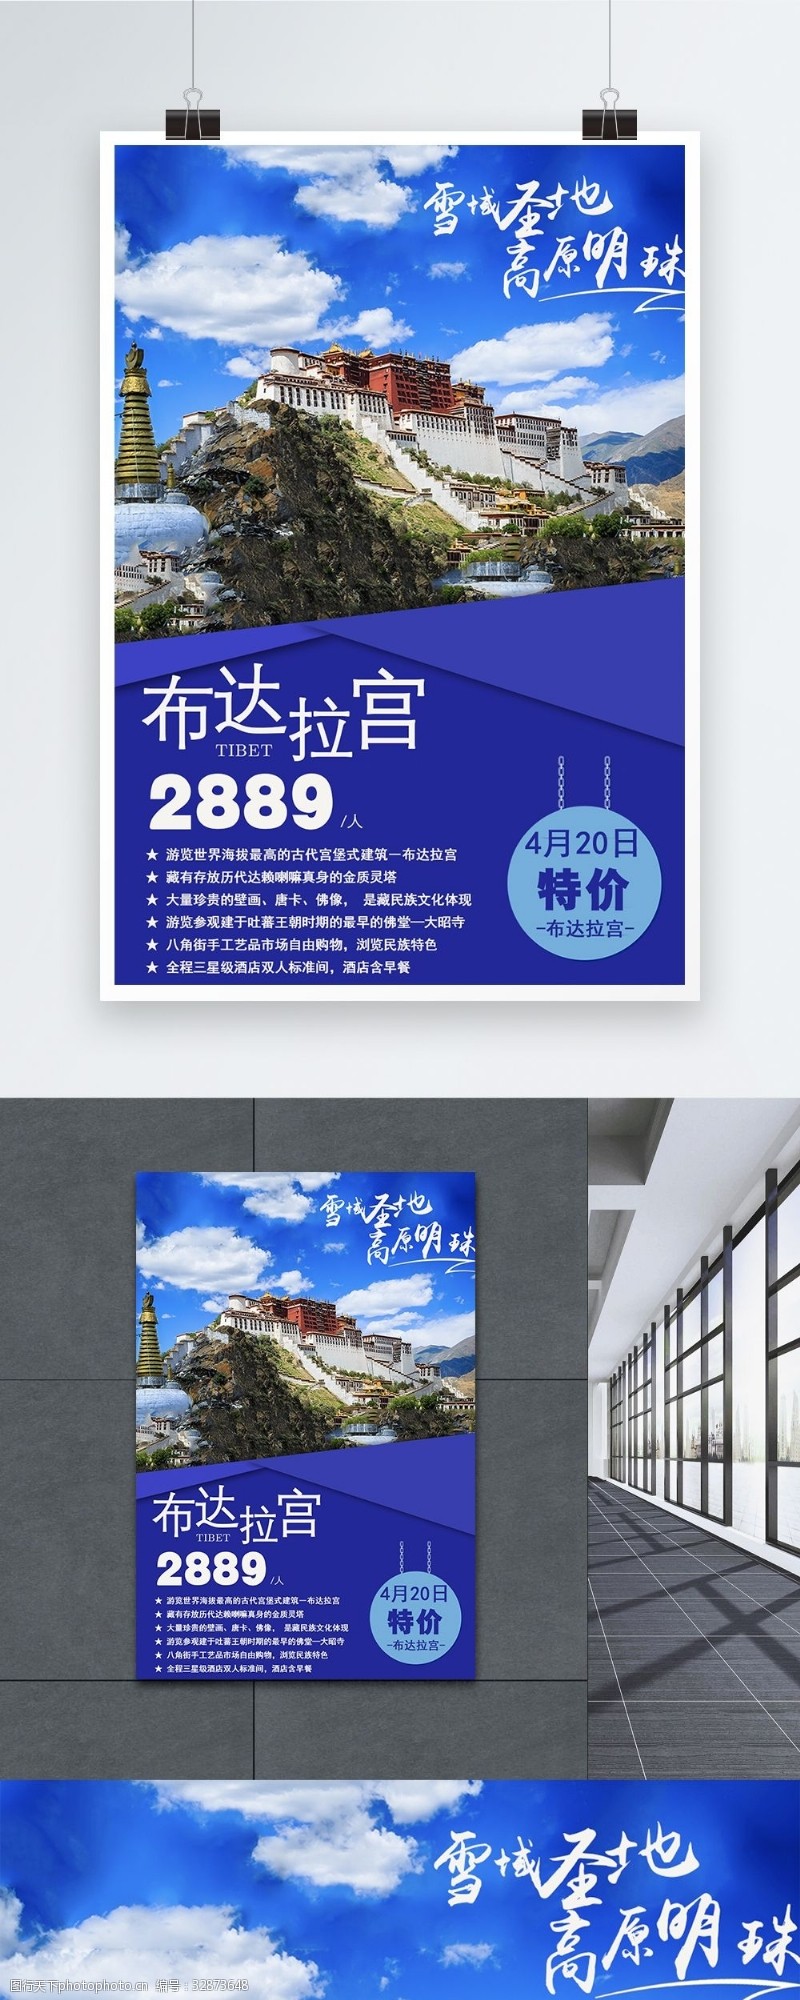 西藏旅游海报西藏布达拉宫旅游海报